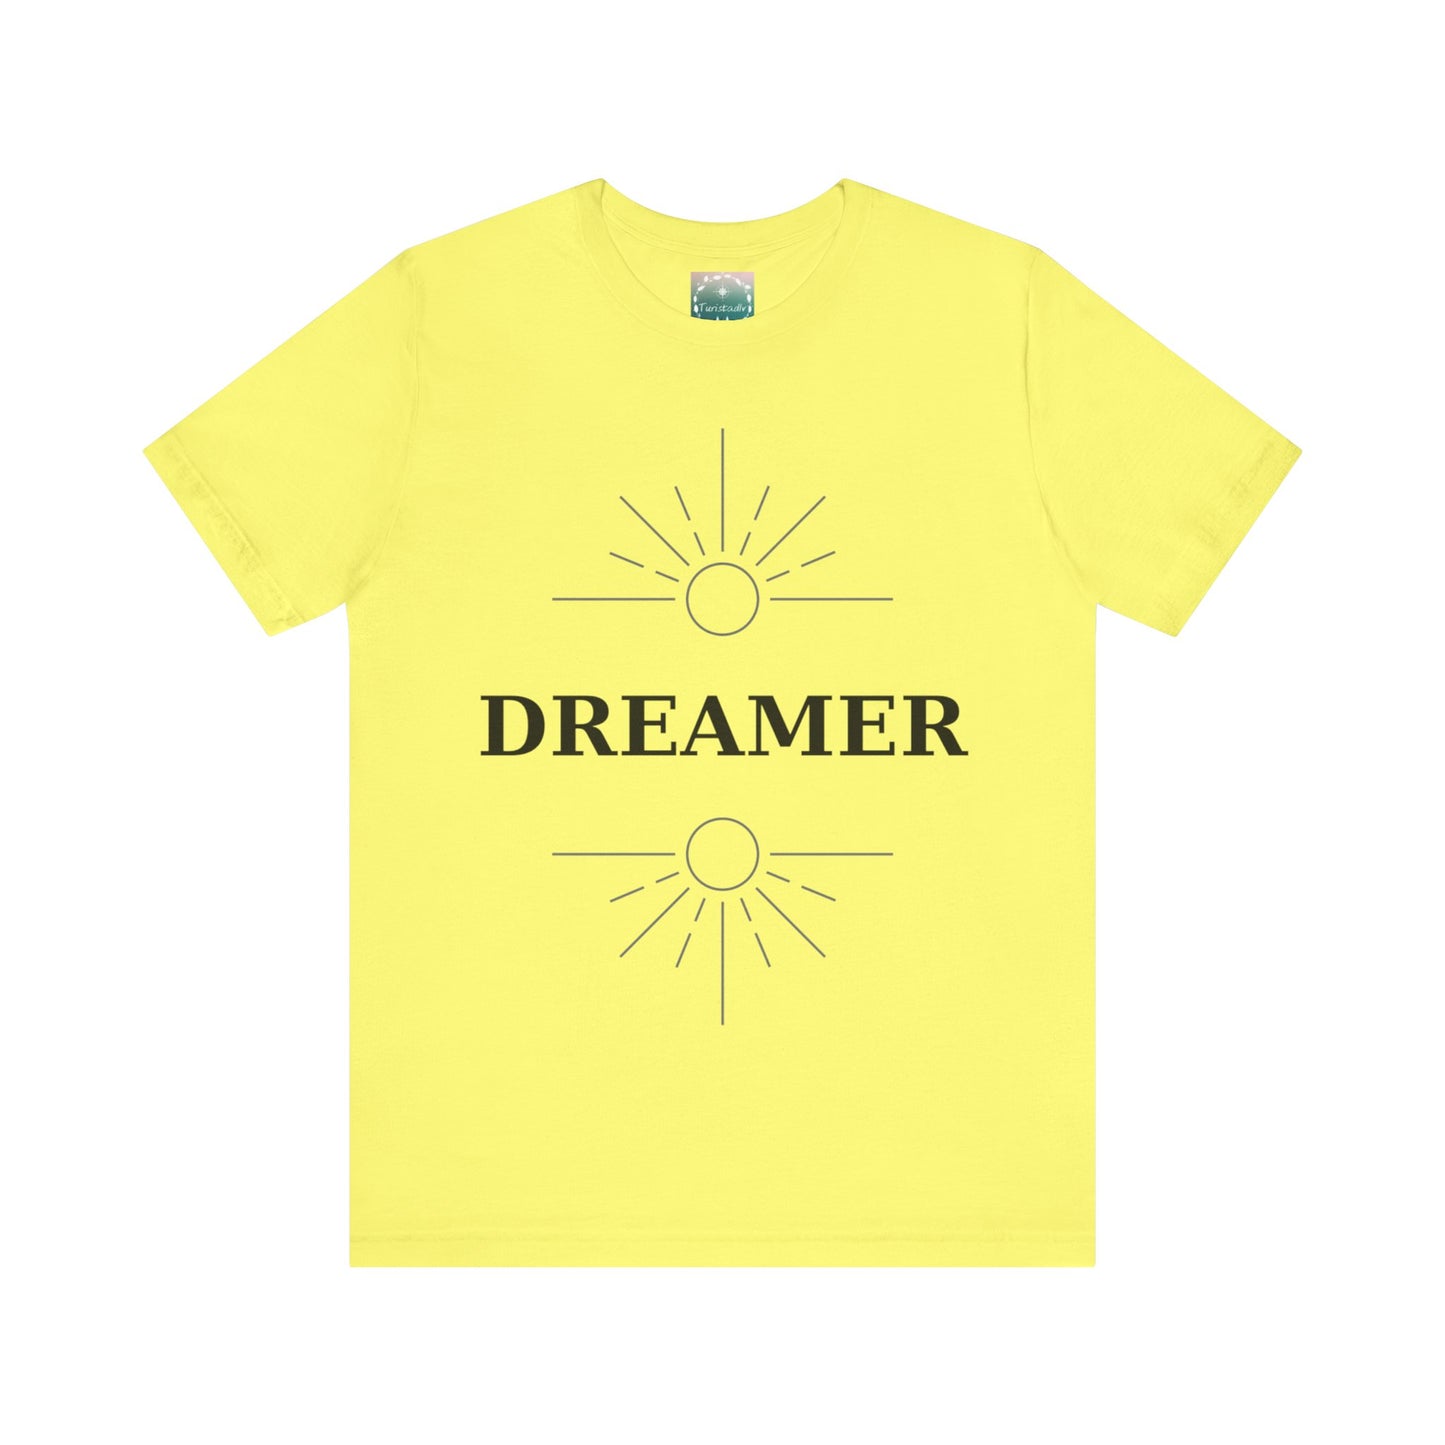 Camiseta de soñador, camiseta de viajero, camiseta inspiradora, camiseta de viaje, regalo de viaje, camiseta de sueños, regalo de nómadas